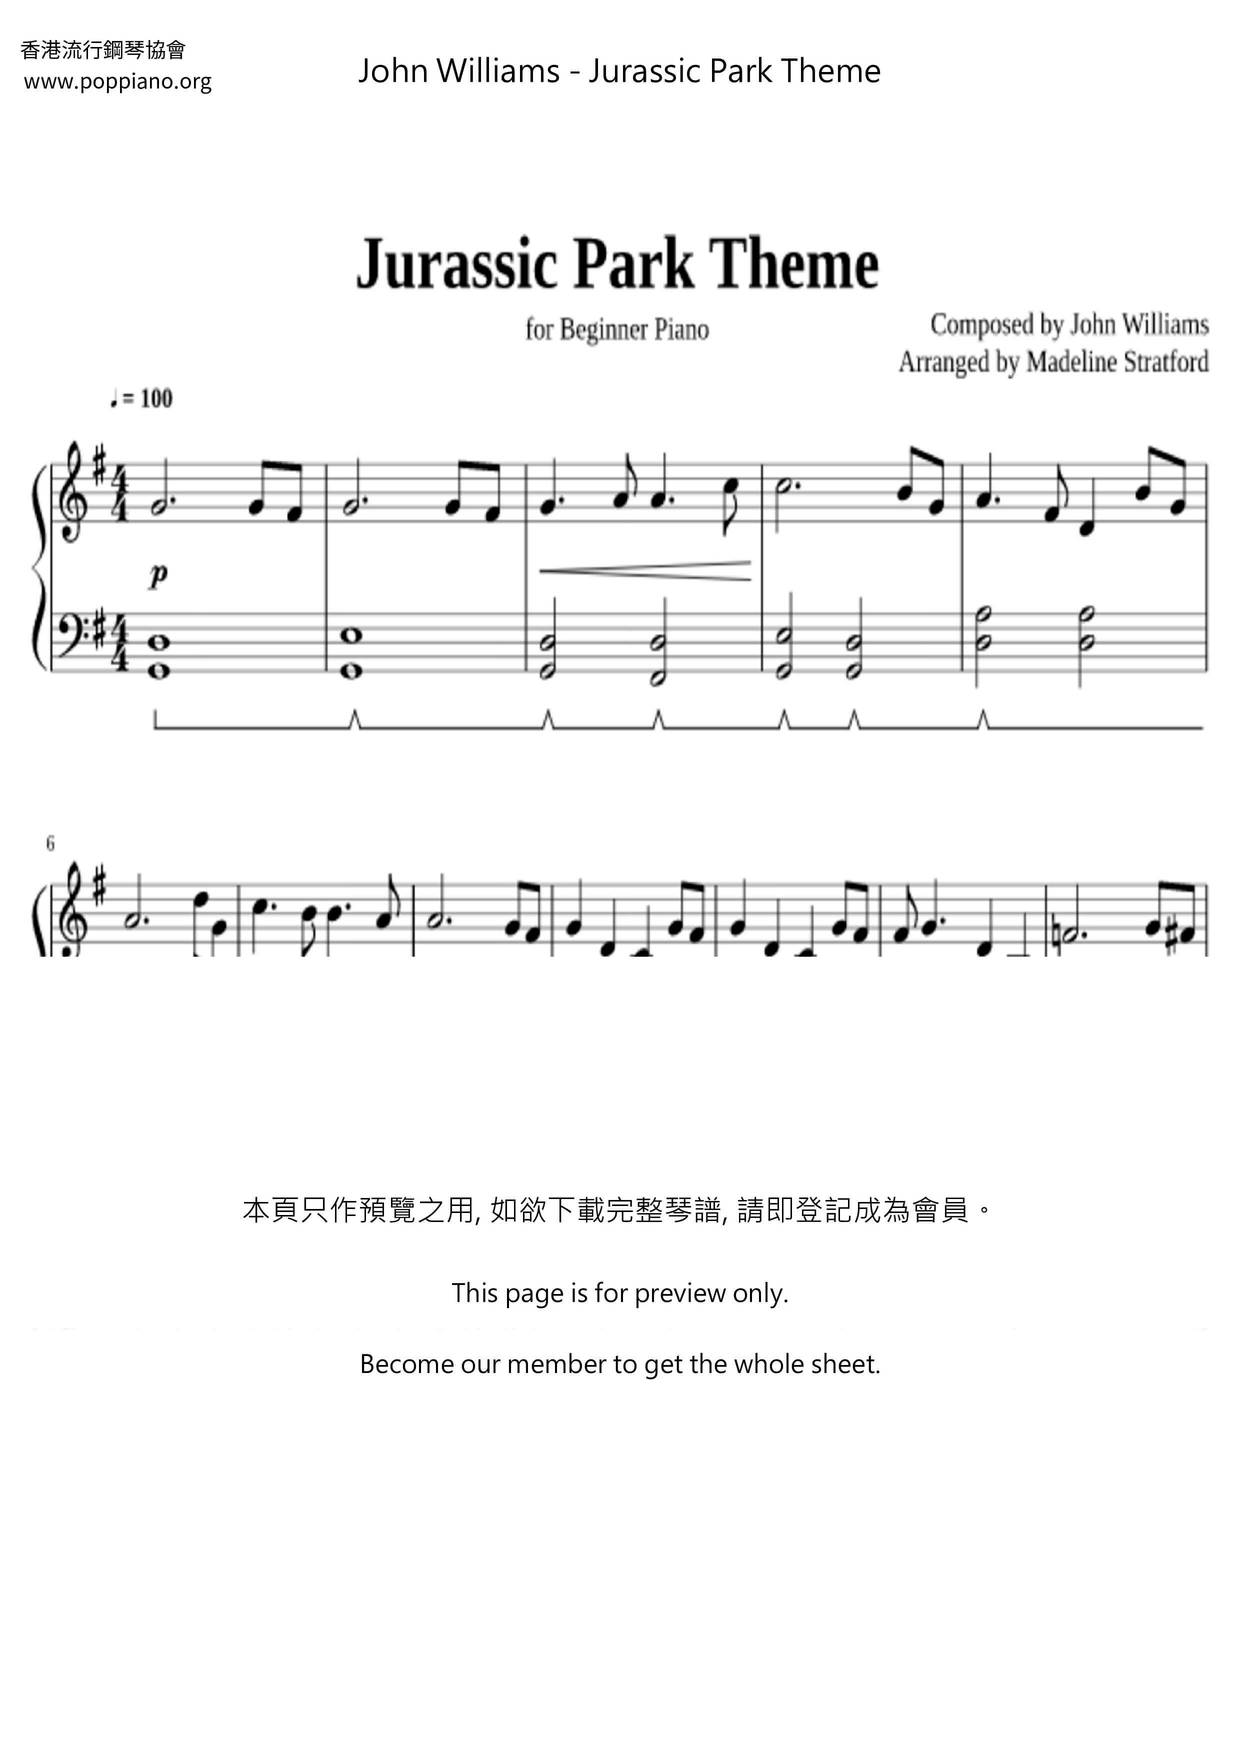 Jurassic Park Theme Score